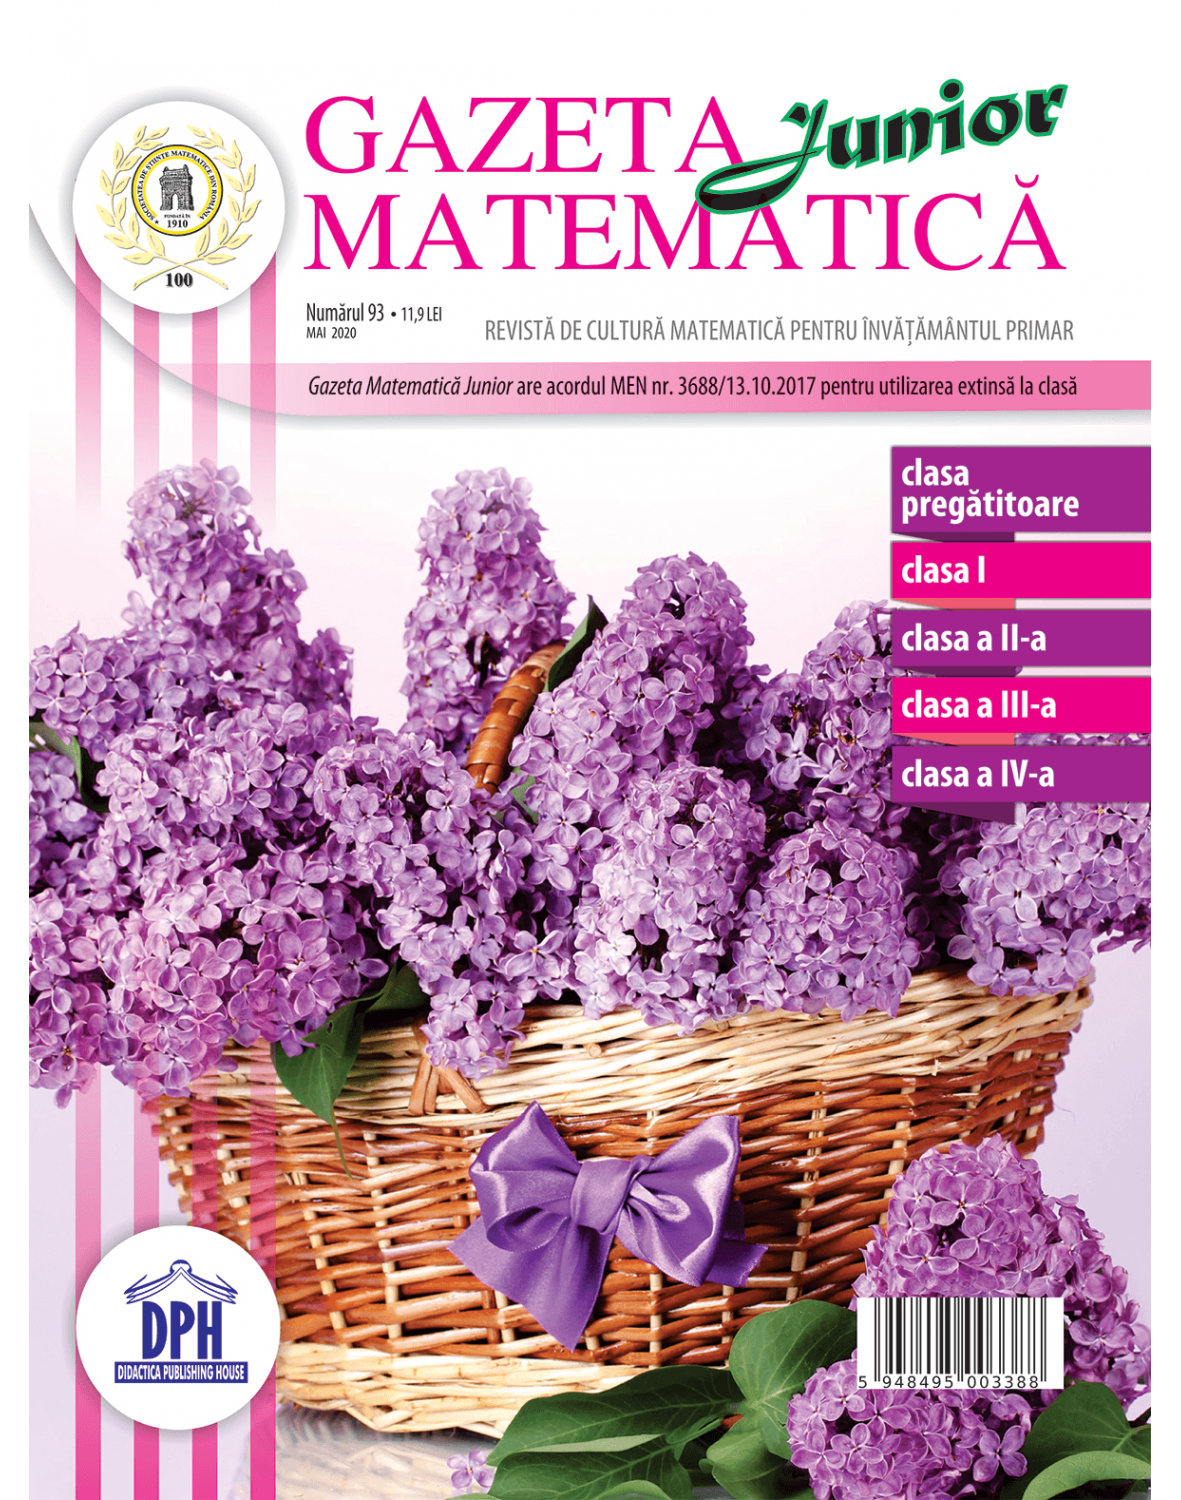 Gazeta Matematica Junior nr. 93